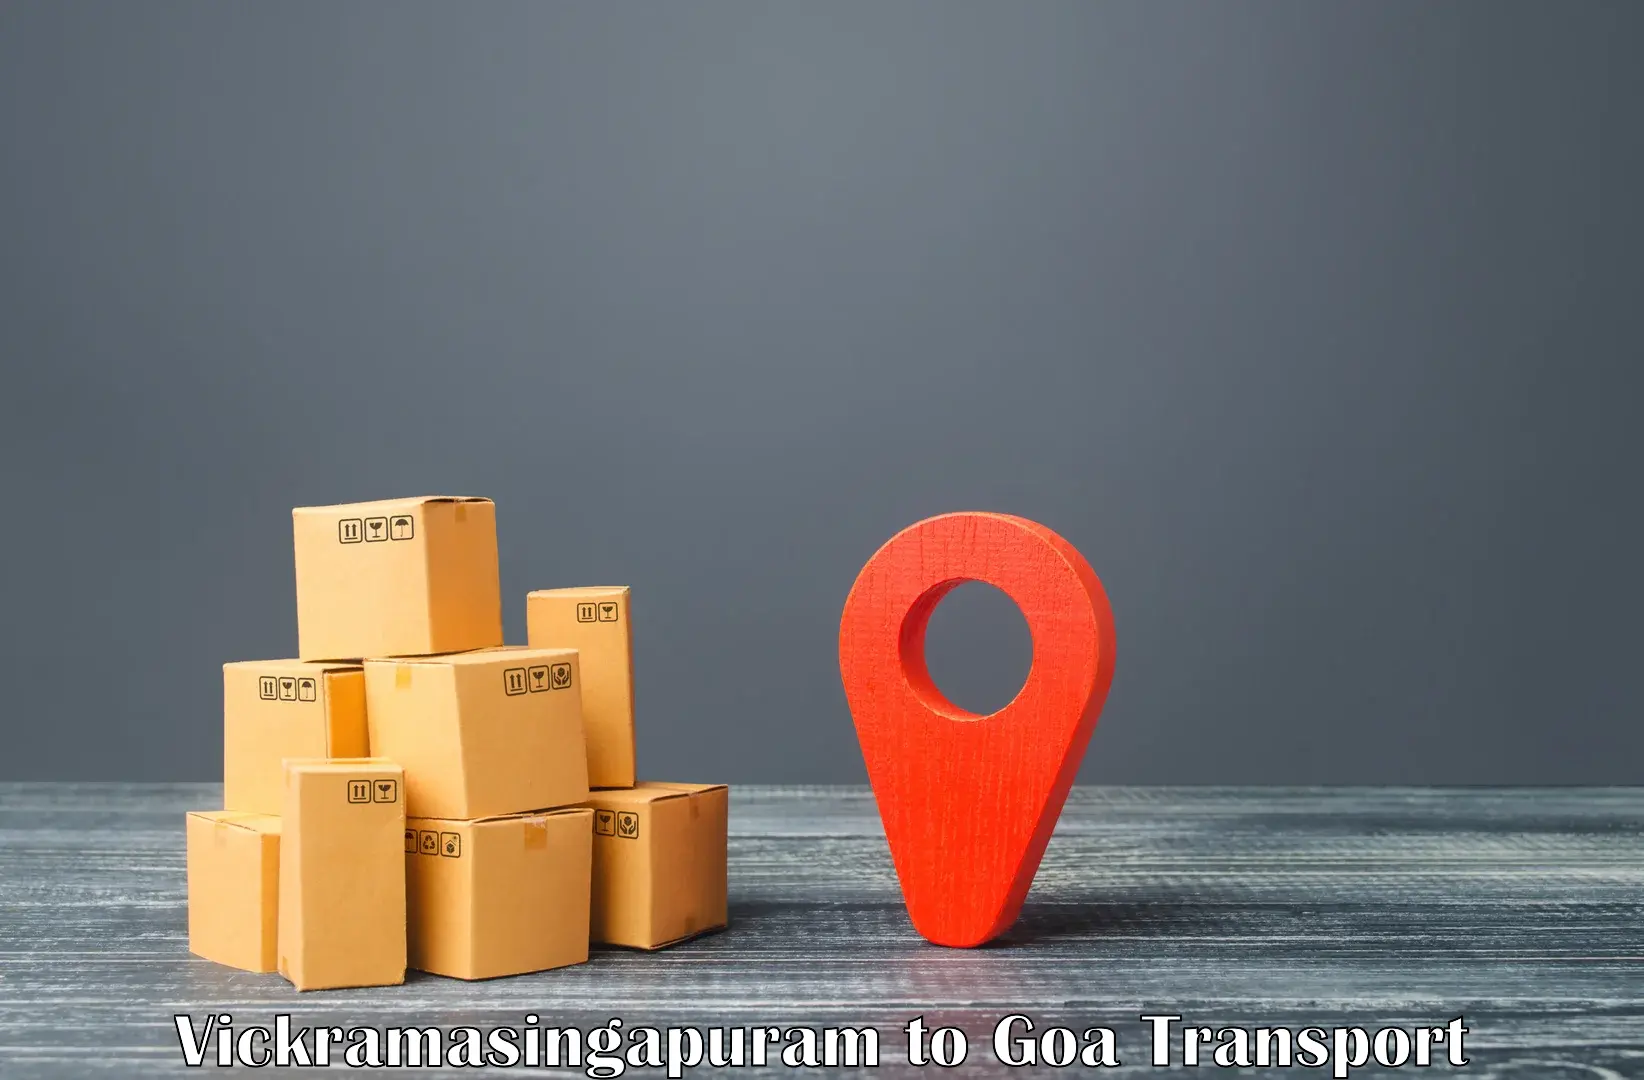 International cargo transportation services Vickramasingapuram to Goa University